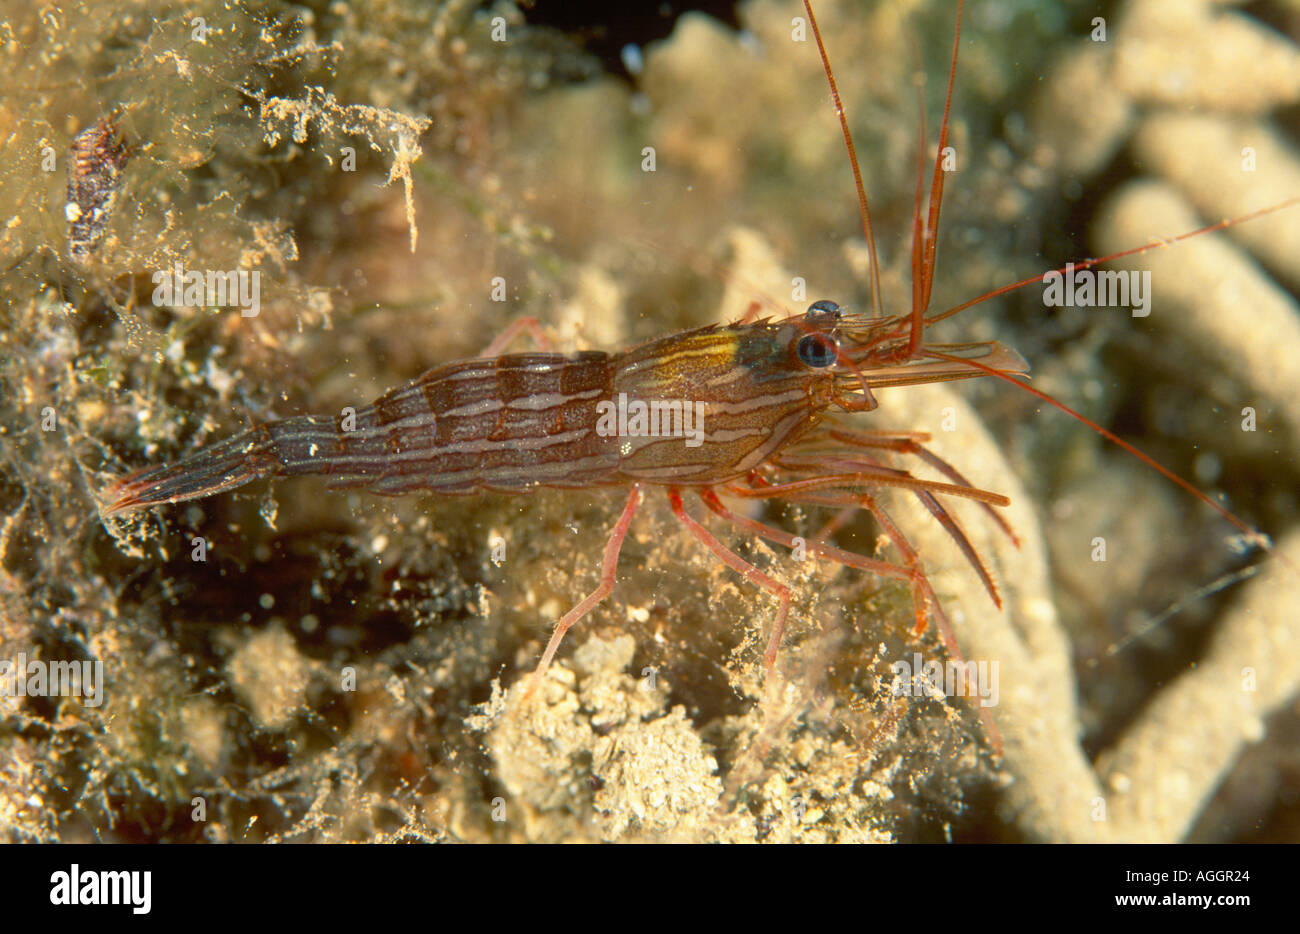 Mediterranean cleaner shrimp, Mediterranean rock shrimp, Monaco cleaner shrimp (Lysmata seticaudata), Greece, Creta, Mediterran Stock Photo